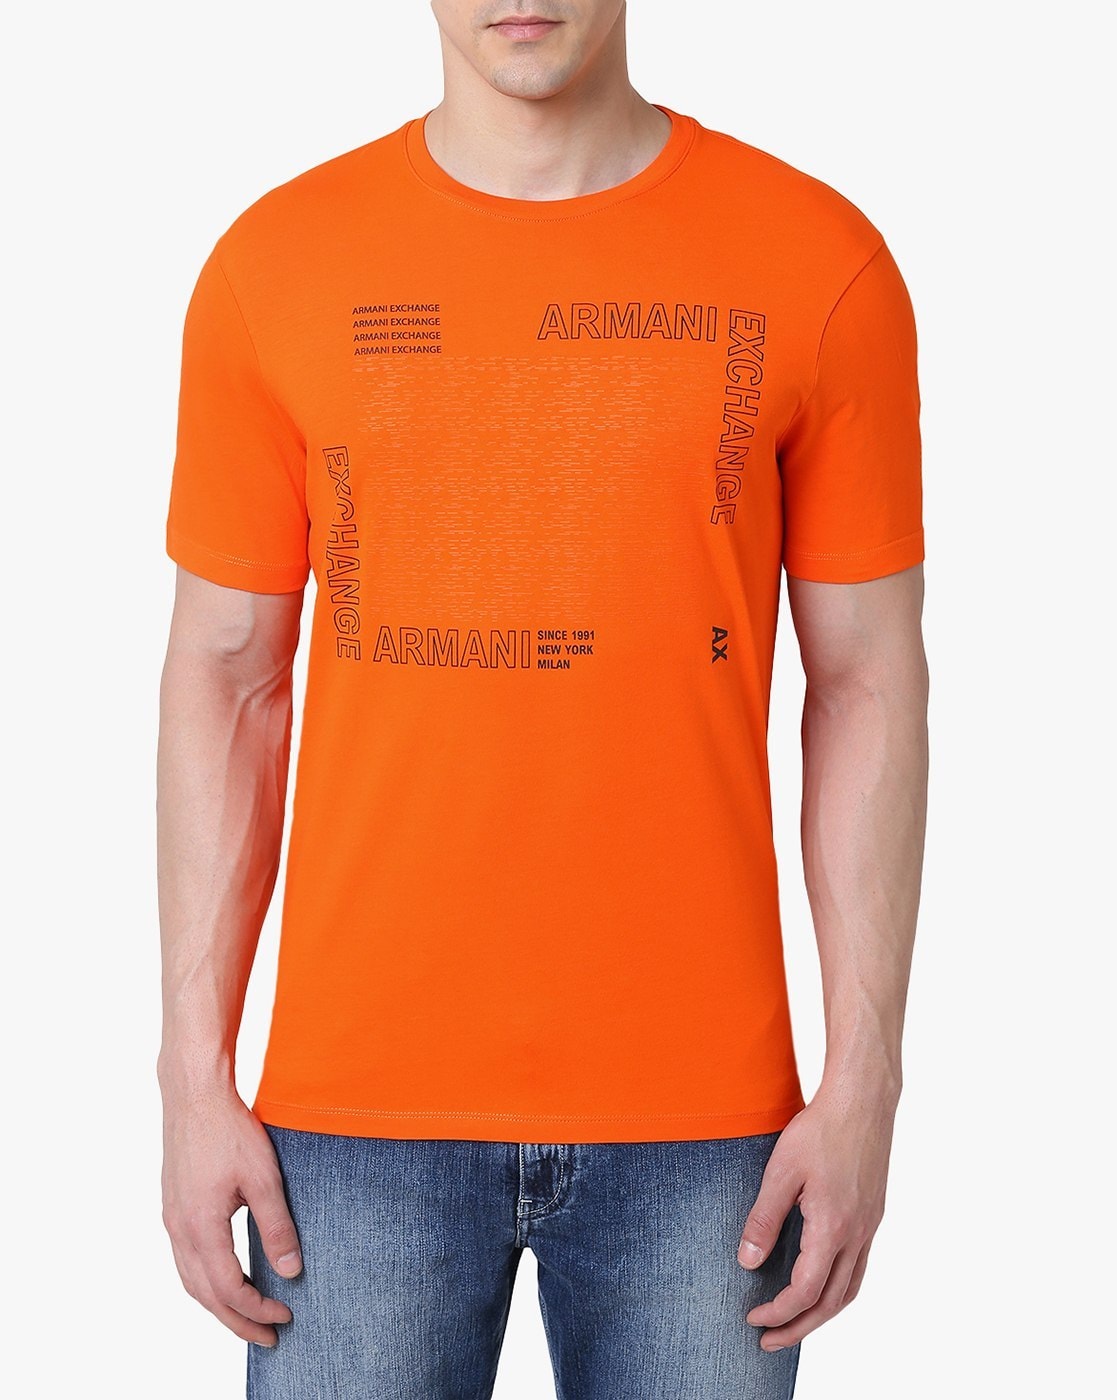 armani exchange orange t shirt